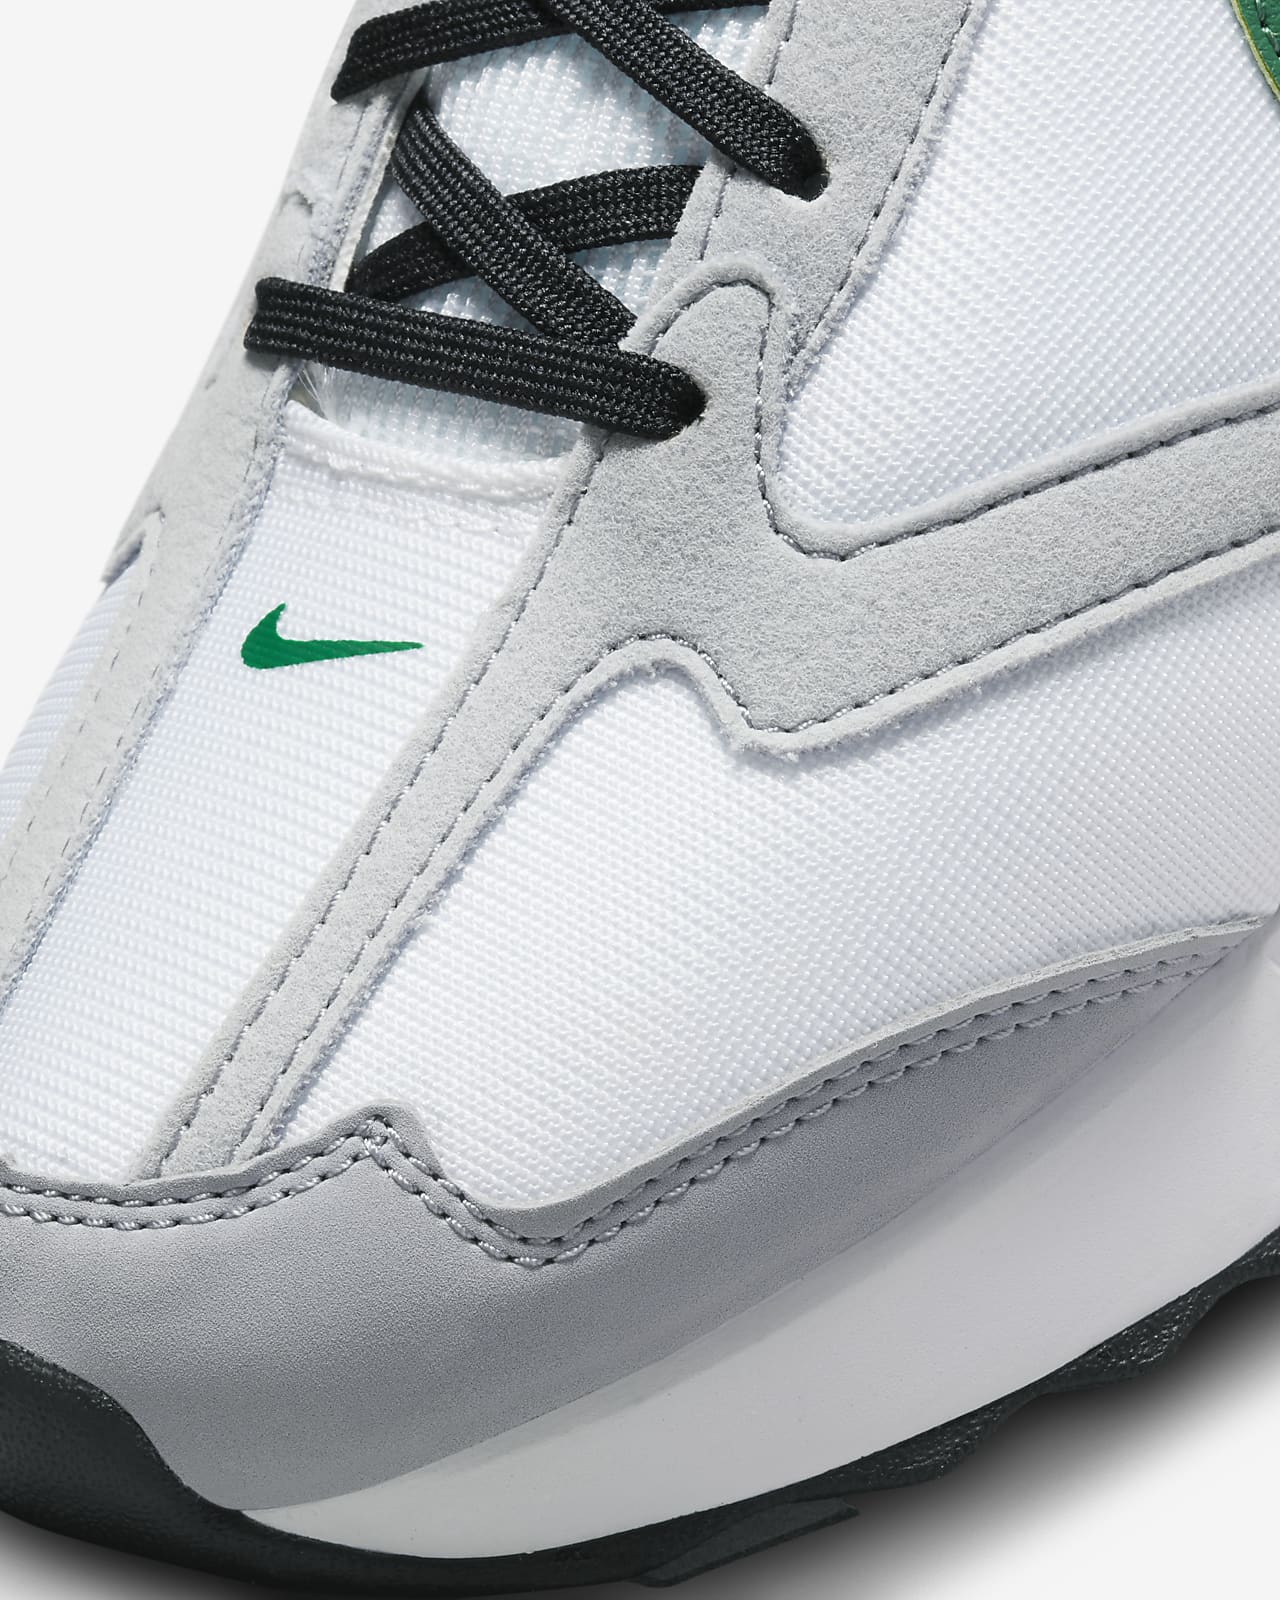 text leak Acquisition Nike Air Max Dawn Men's Shoes. Nike.com